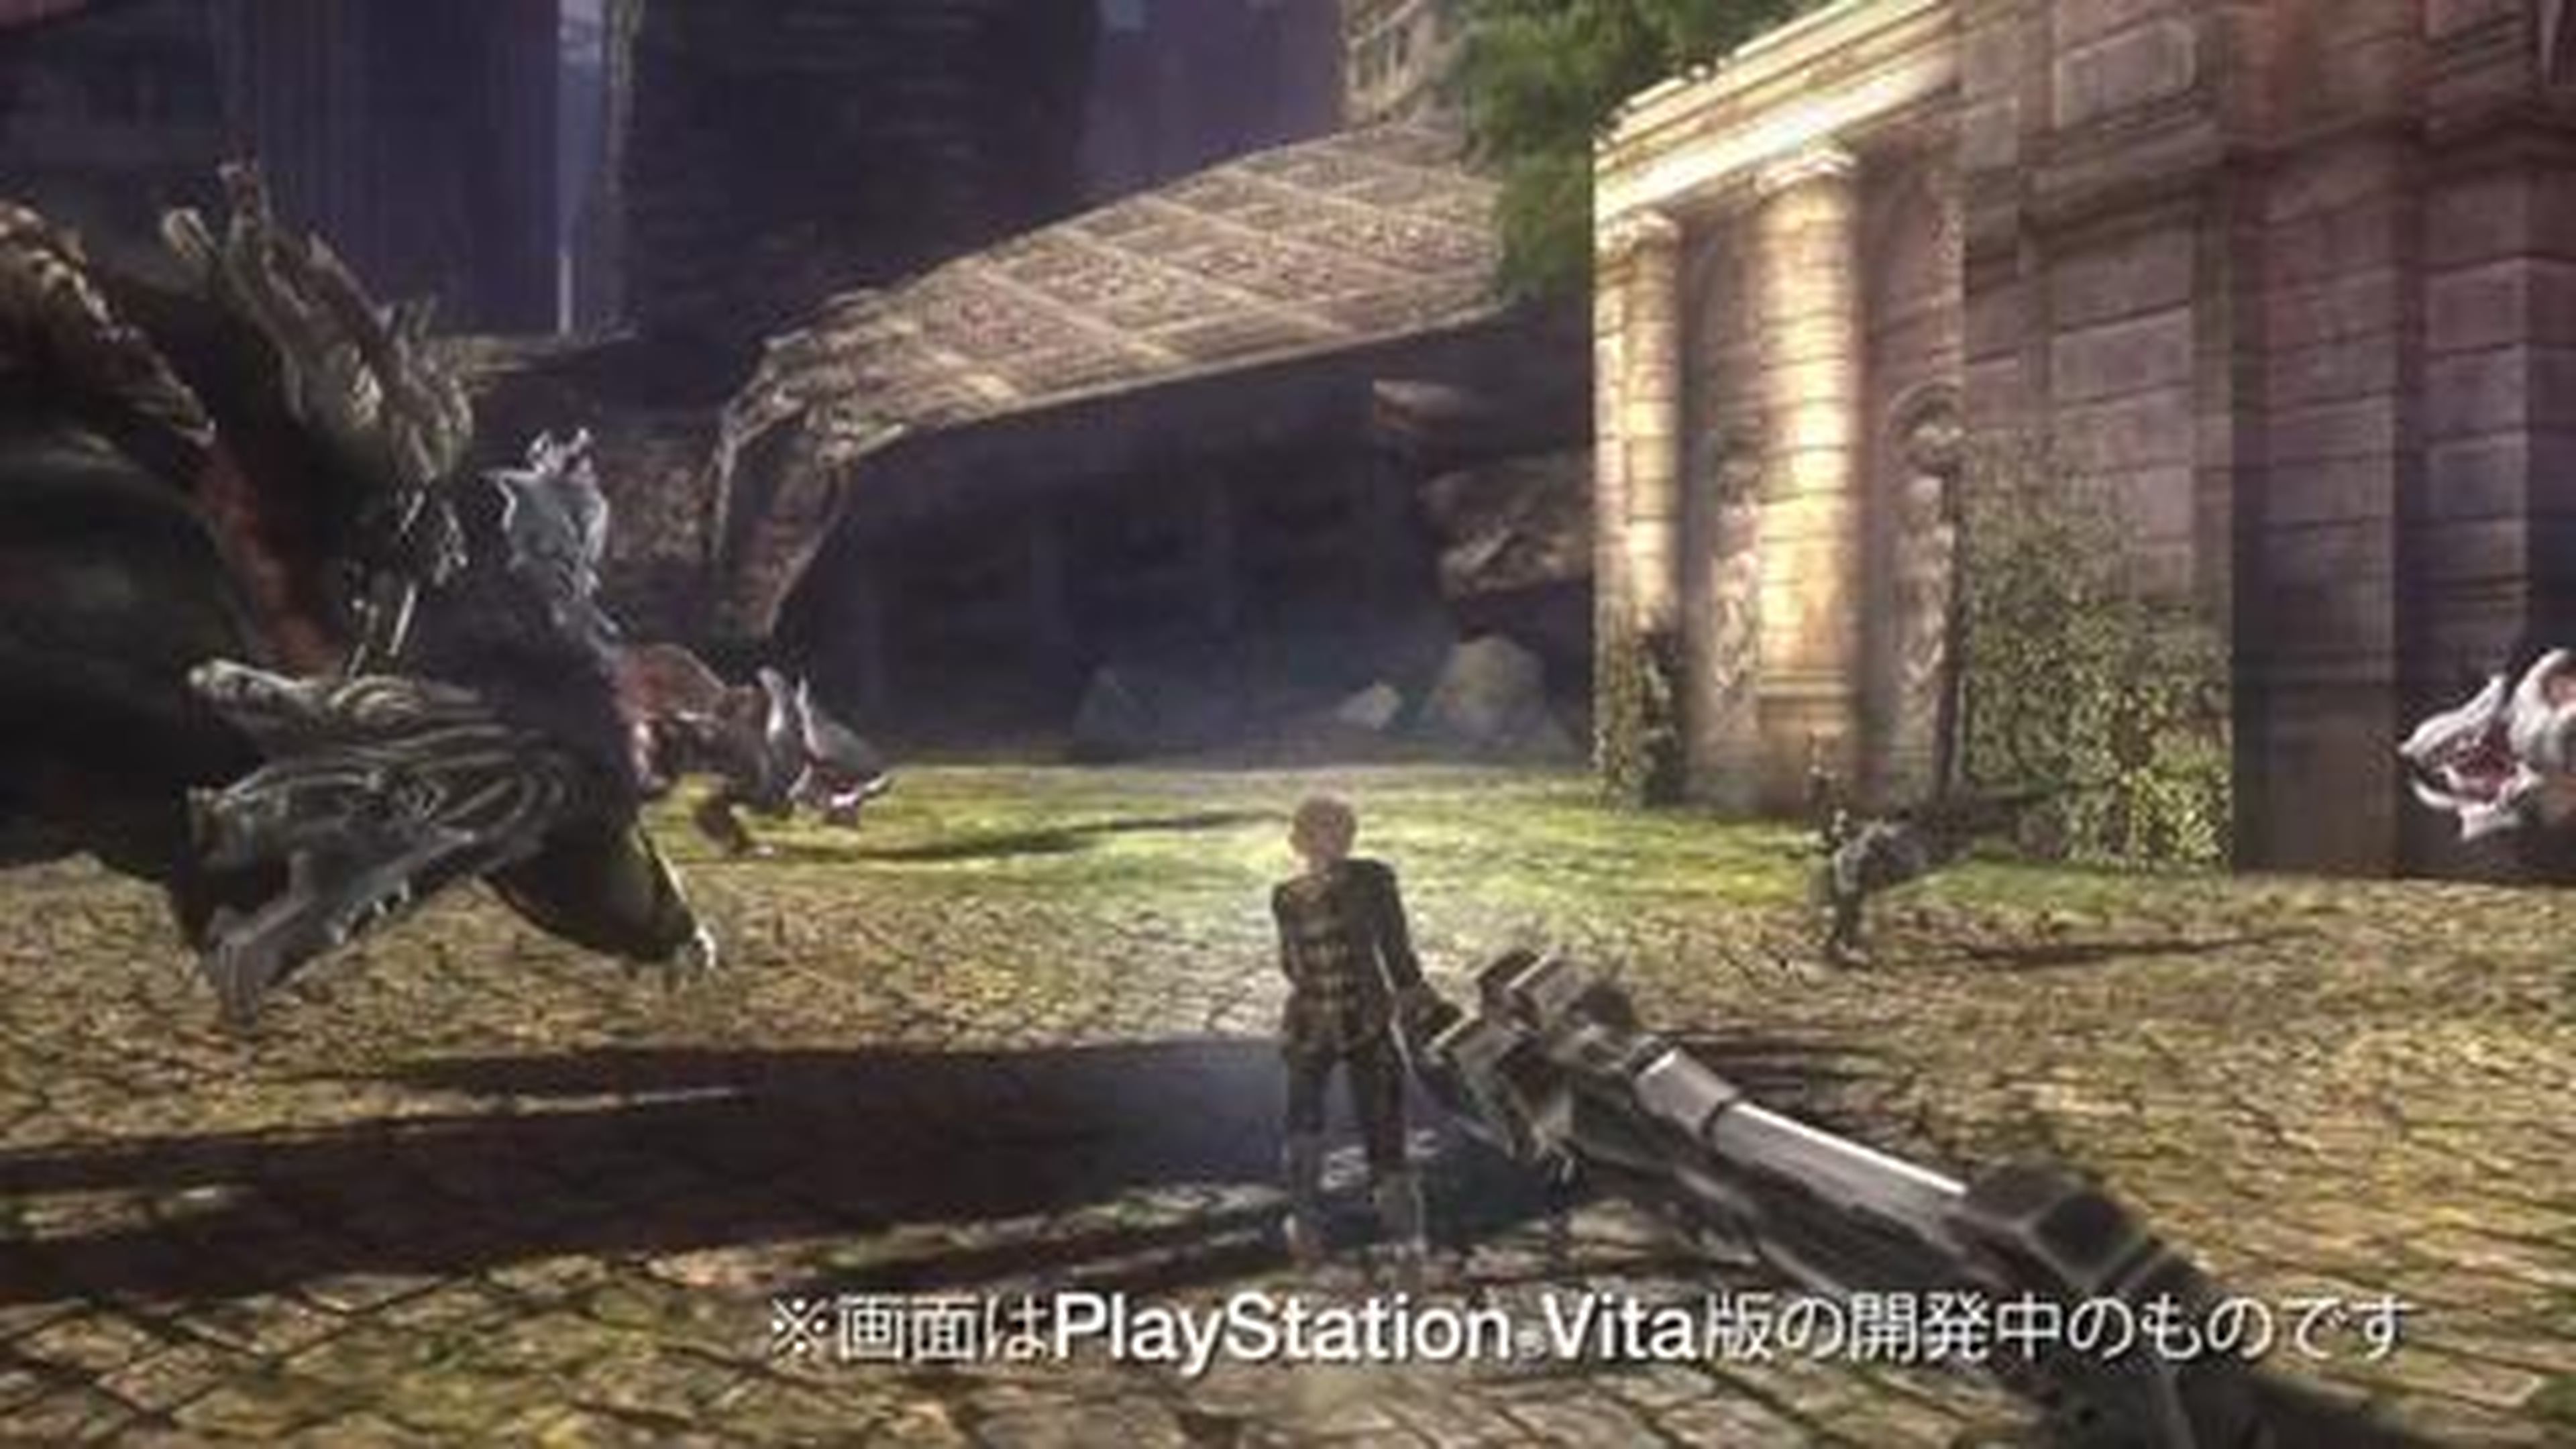 God Eater 2 para PSP y PS Vita anunciado en Tokio Game Show 2012 en Hobbyconsolas.com